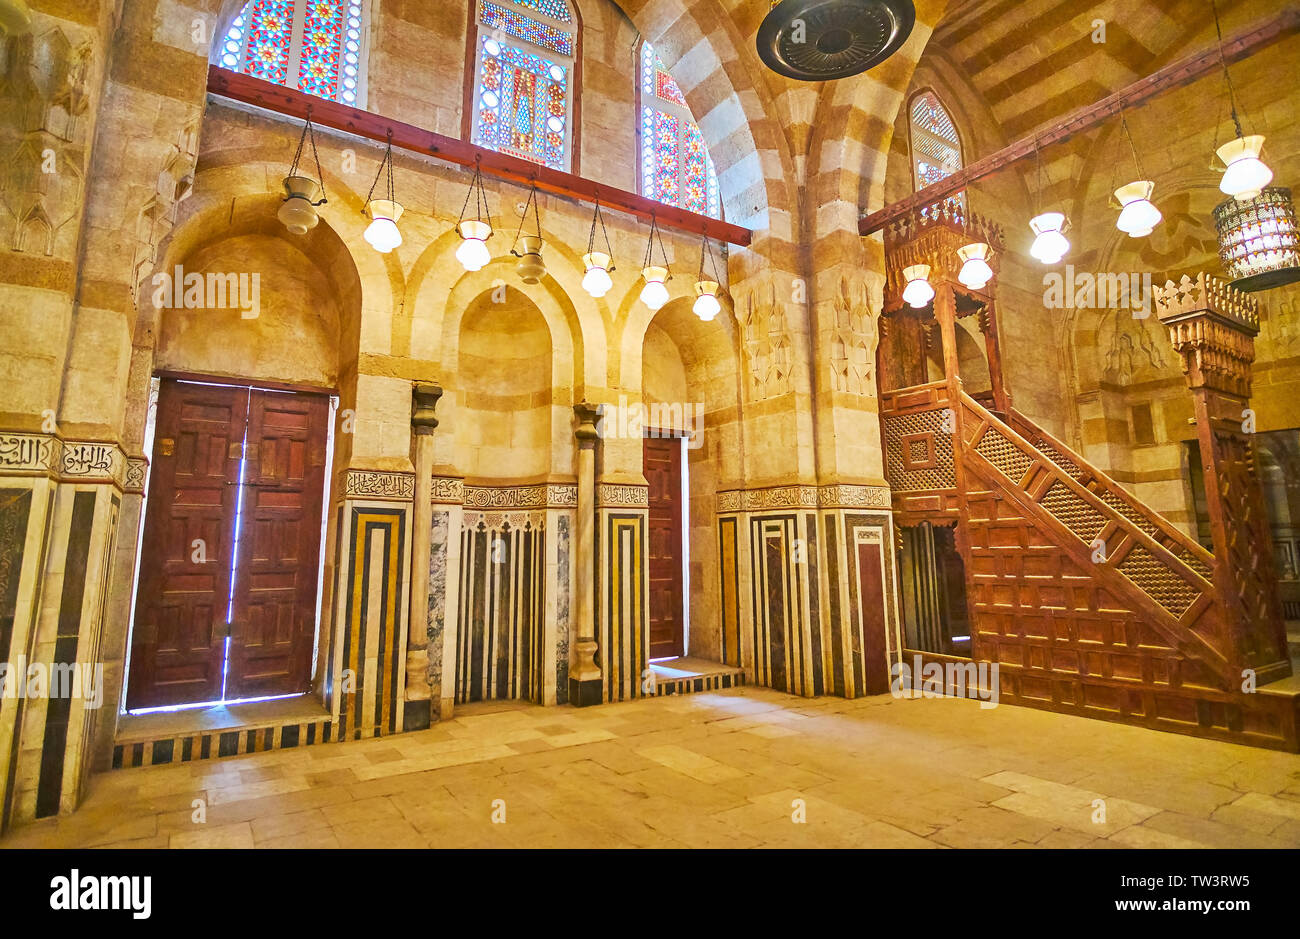 Il Cairo, Egitto - 22 dicembre 2017: La scenic interno del medievale moschea Khayrbak con intarsi in pietra, le finestre di vetro macchiate, lampade vintage e scolpito wo Foto Stock